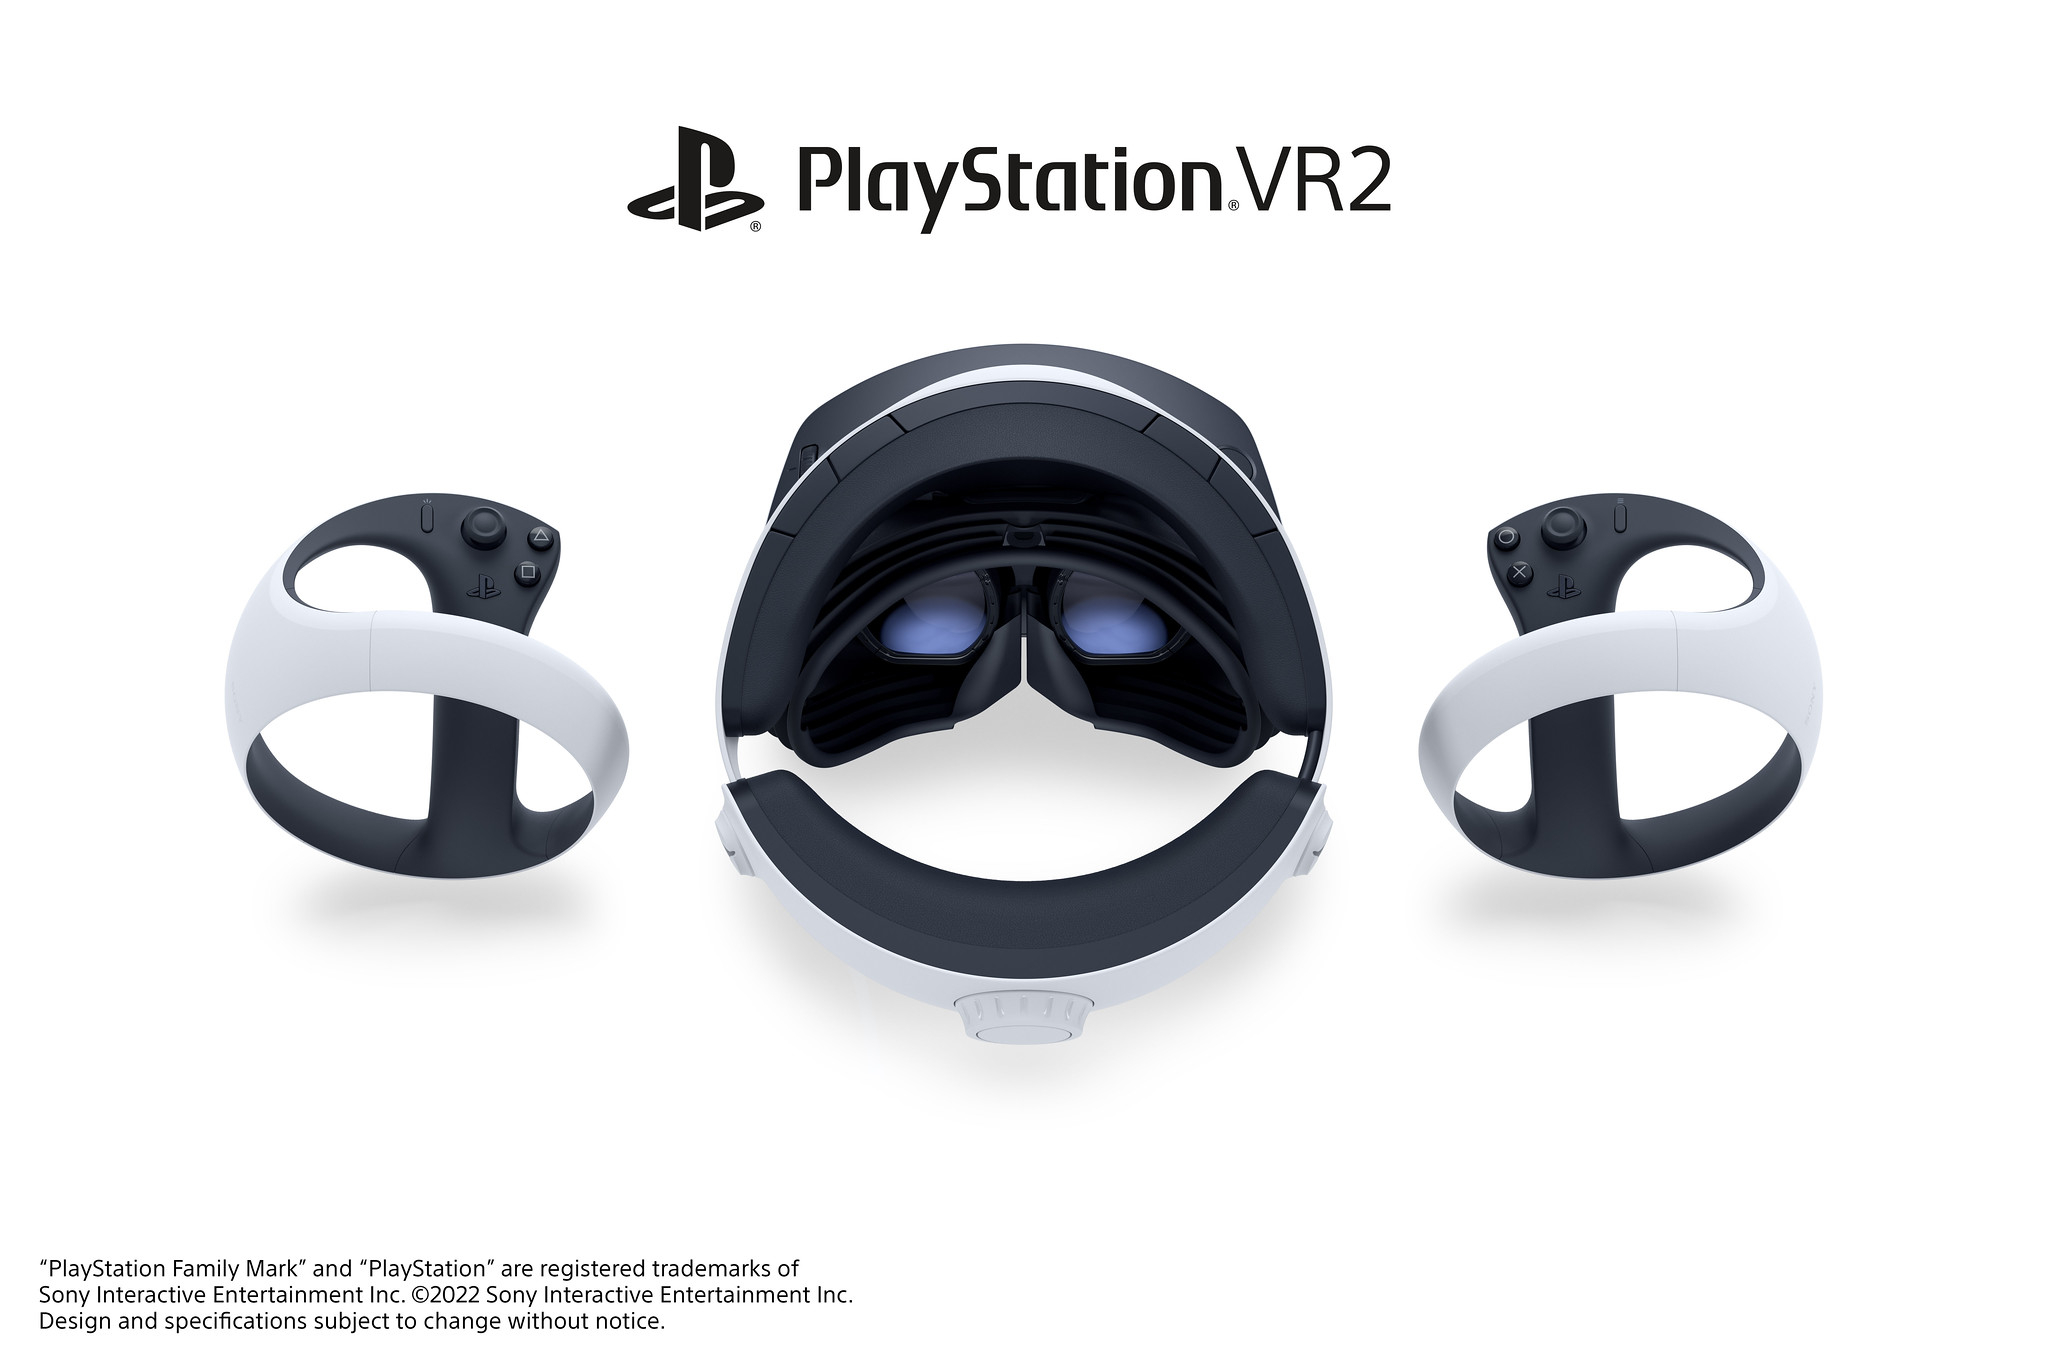 Immagine pubblicata in relazione al seguente contenuto: Sony Interactive Entertainment lancia l'headset VR next gen PlayStation VR2 | Nome immagine: news34212_Sony-PlayStation-VR2_2.jpg